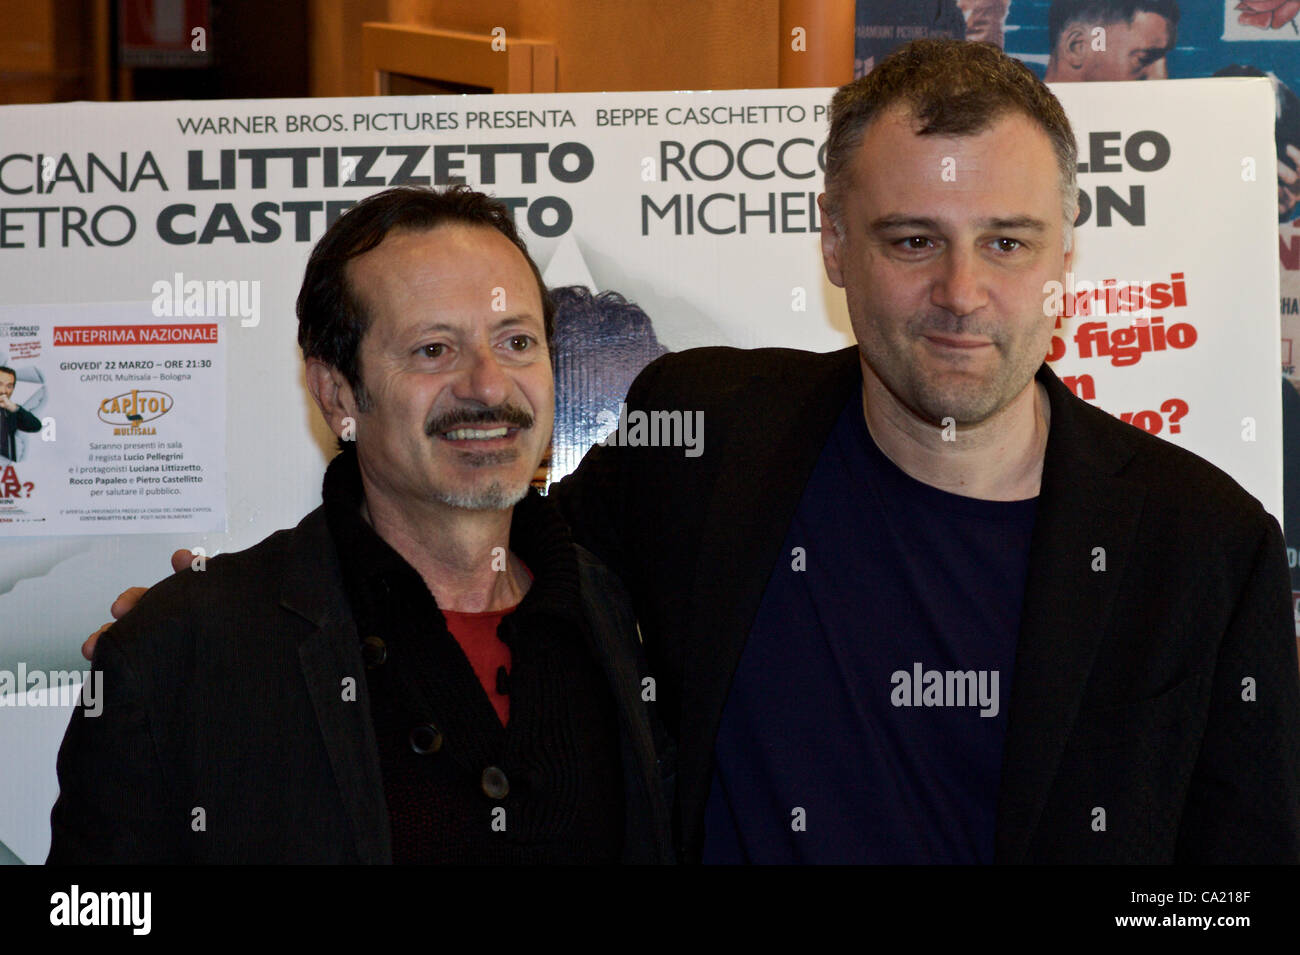 Bologne, Italie - 22 MAR : Papaleo [loi-L], Pellegrini [Directeur-R] en face de la bannière du nouveau film "une étoile est née" à Bologne, Italie le 9 mai 2011. Banque D'Images